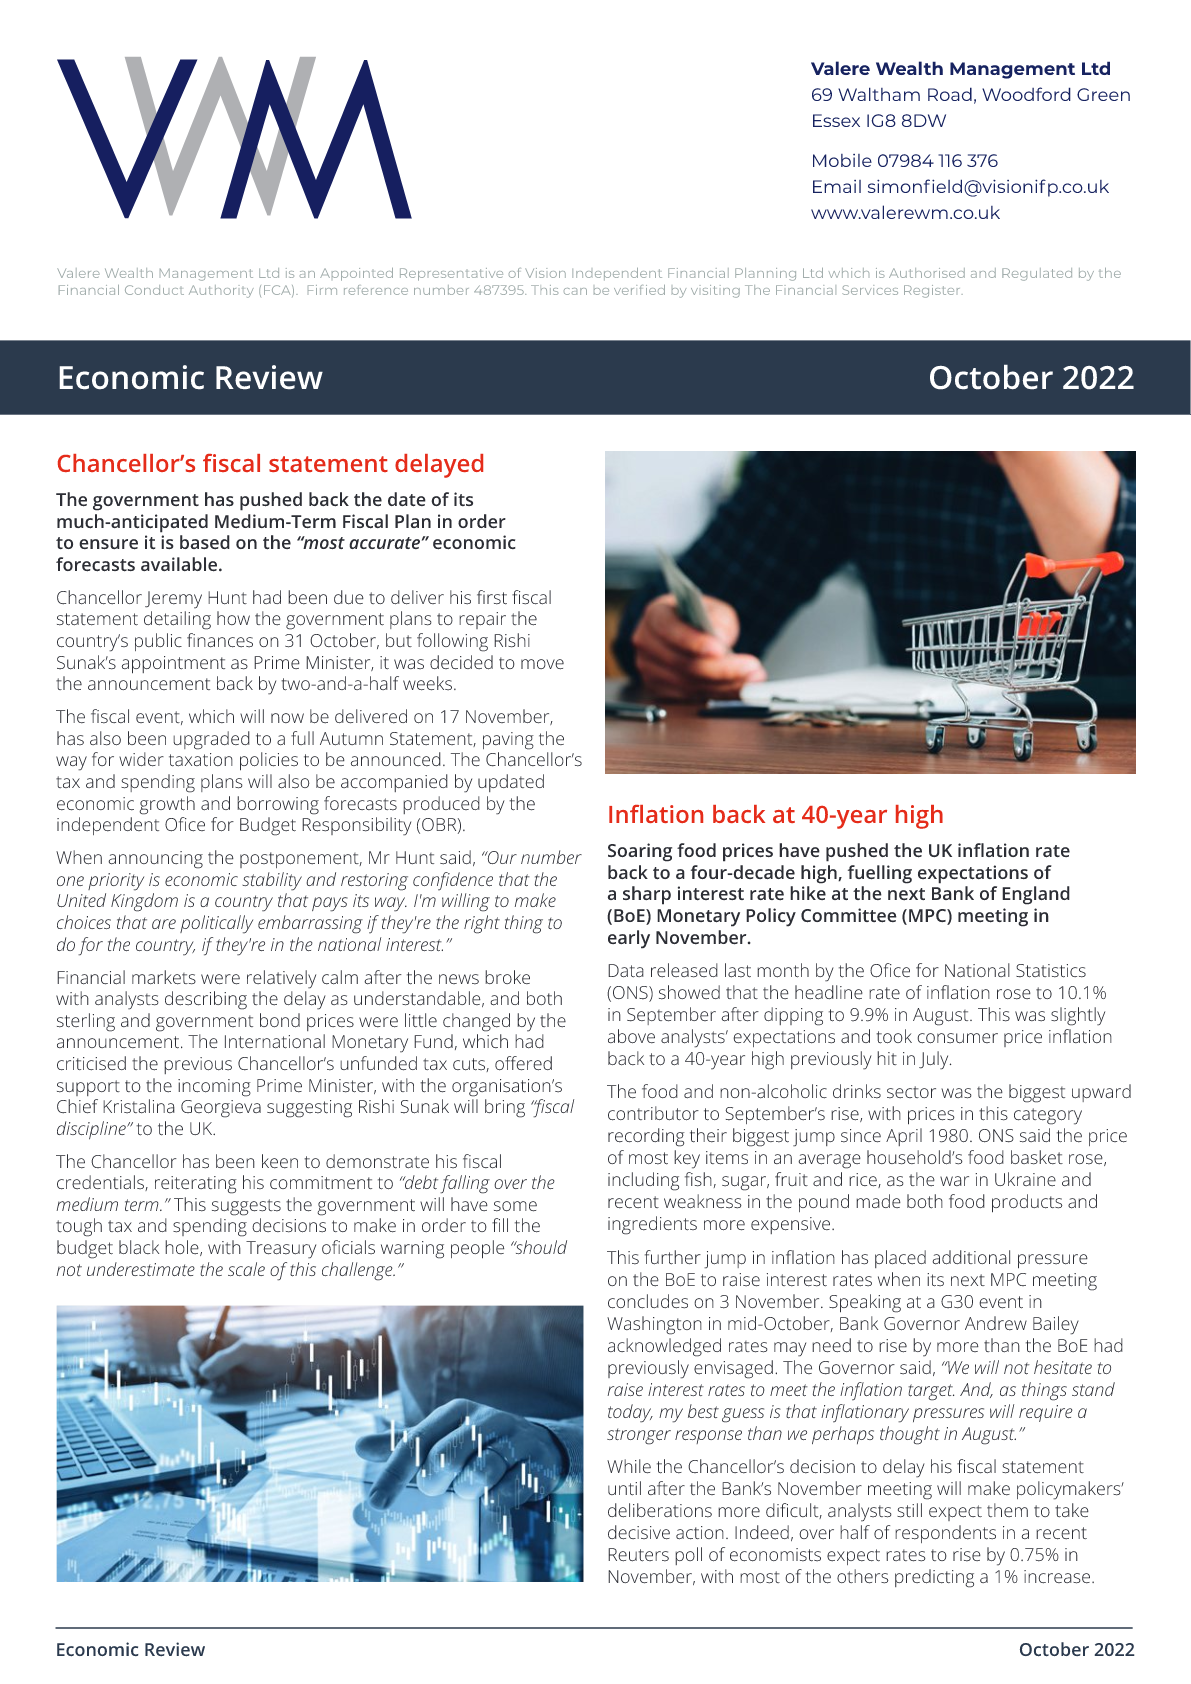 Economic Review Oct 2022